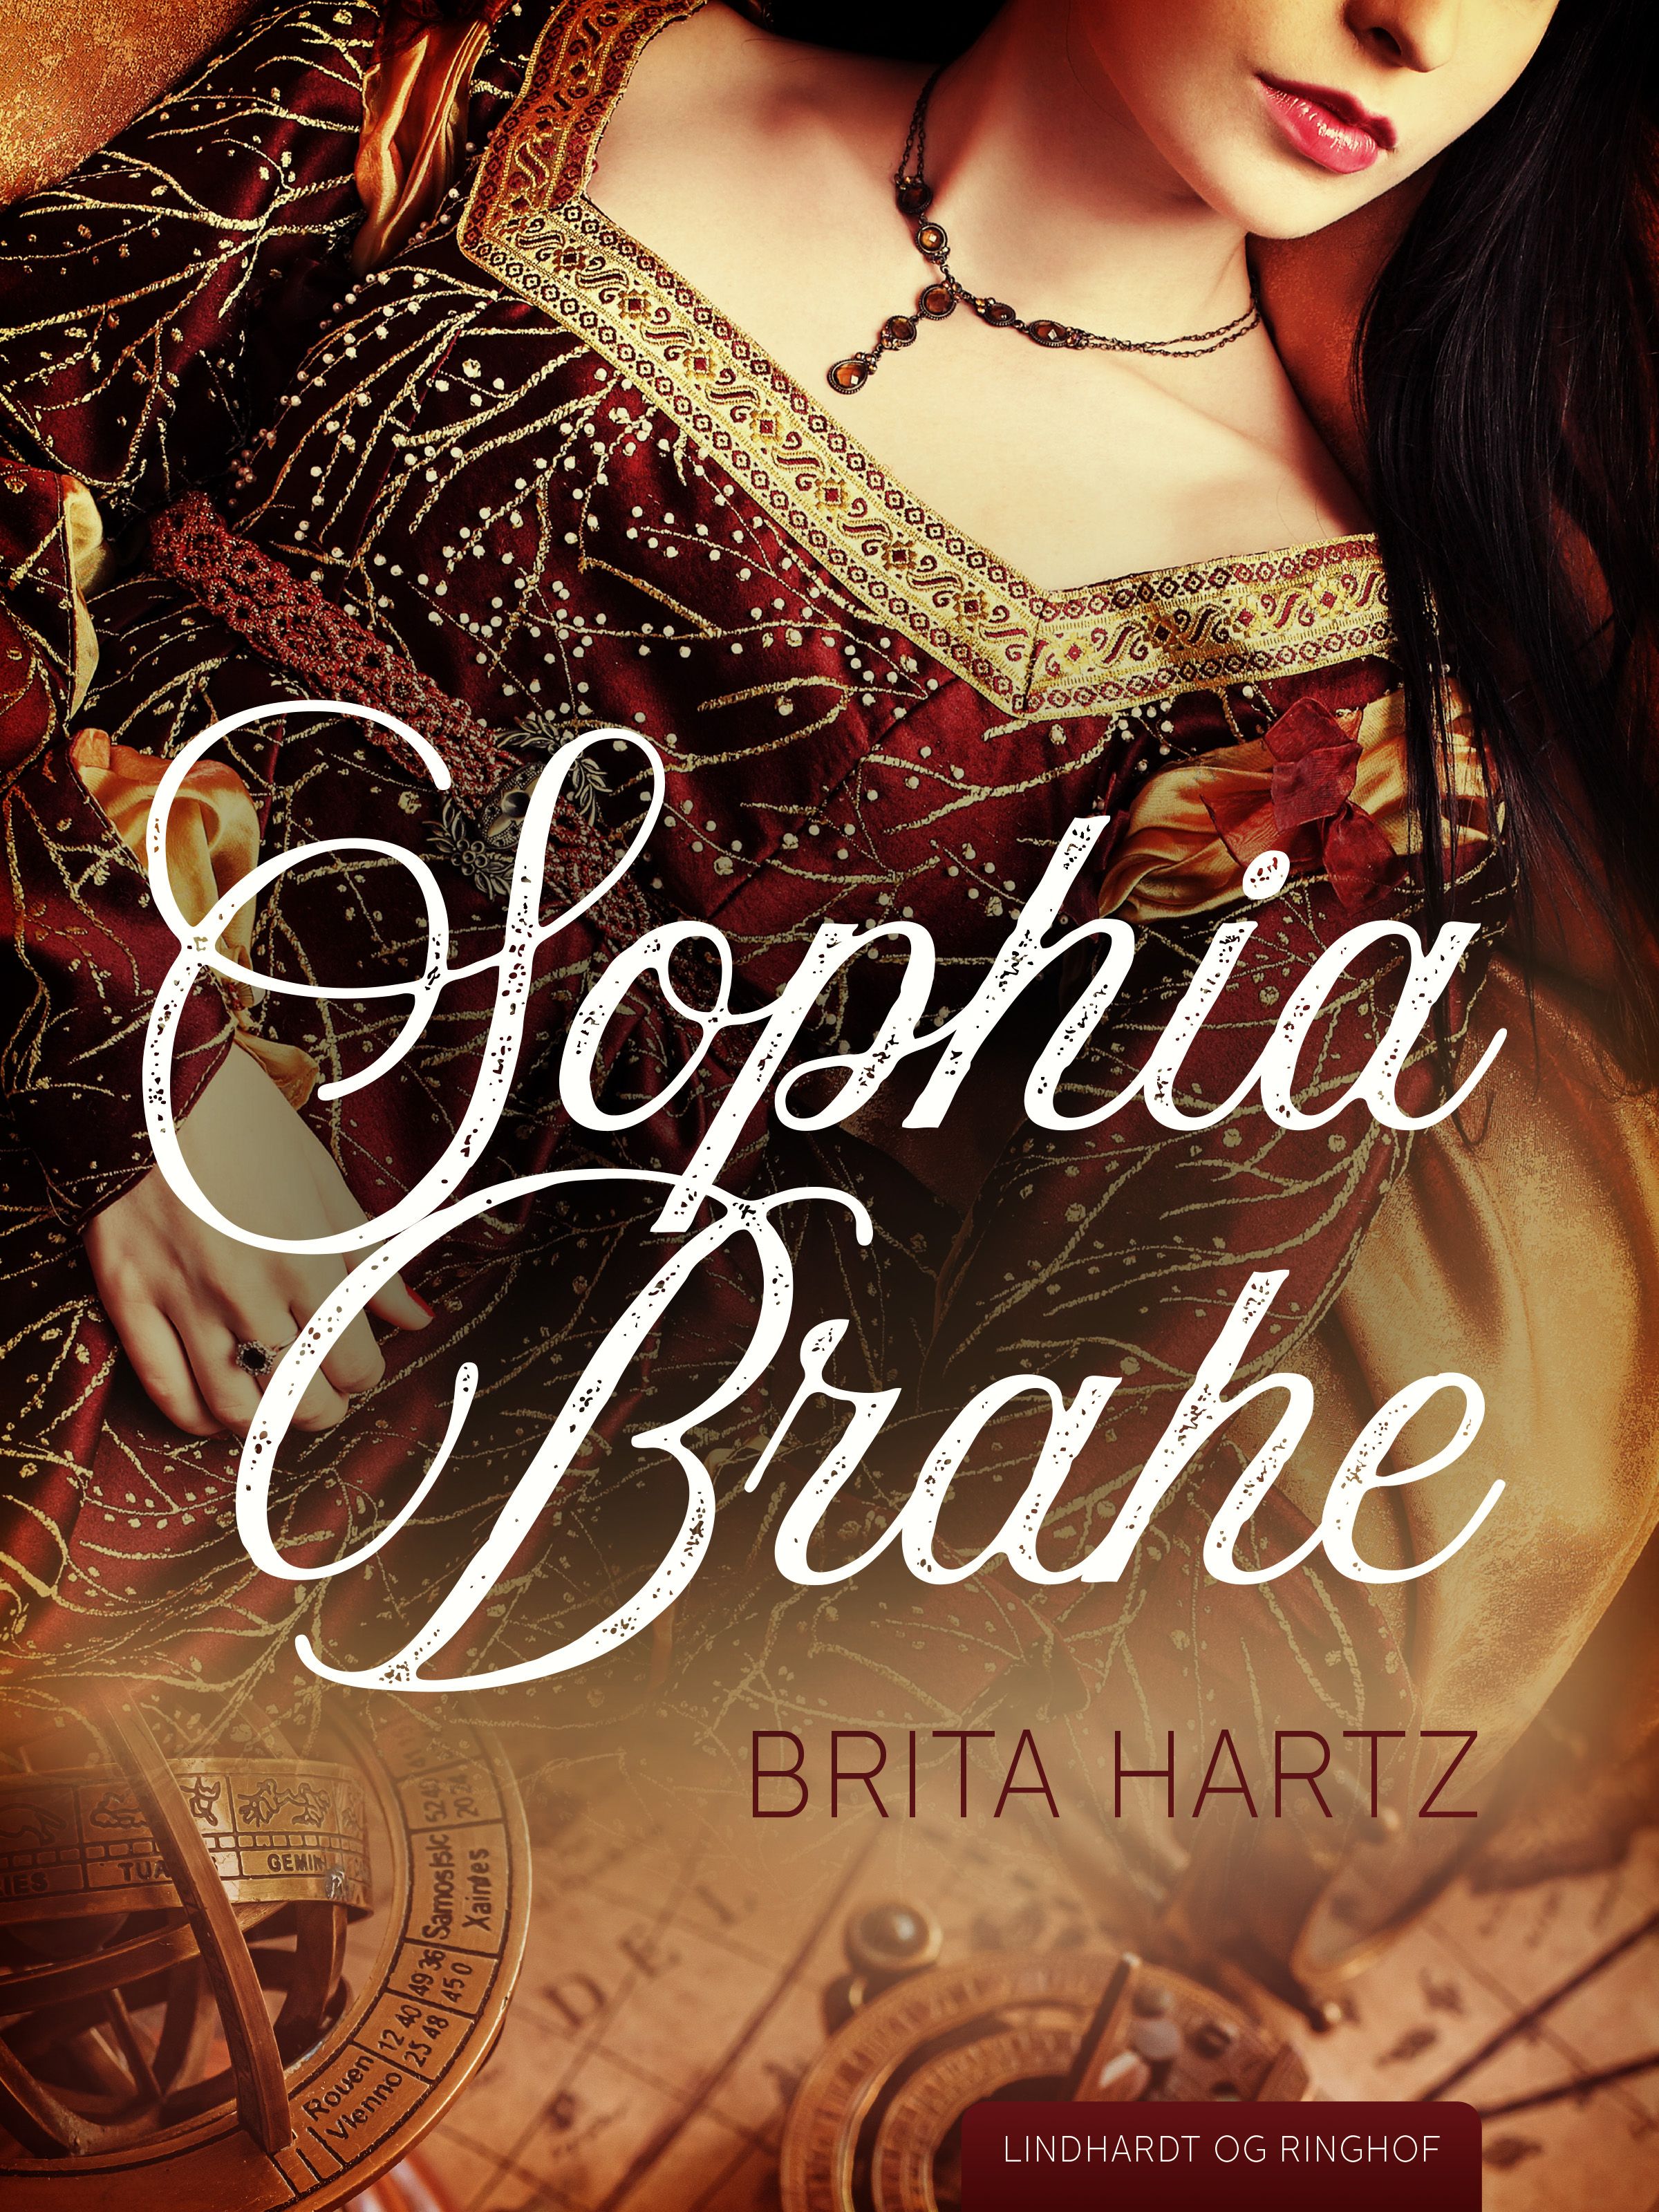 Sophia Brahe, e-bok av Brita Hartz